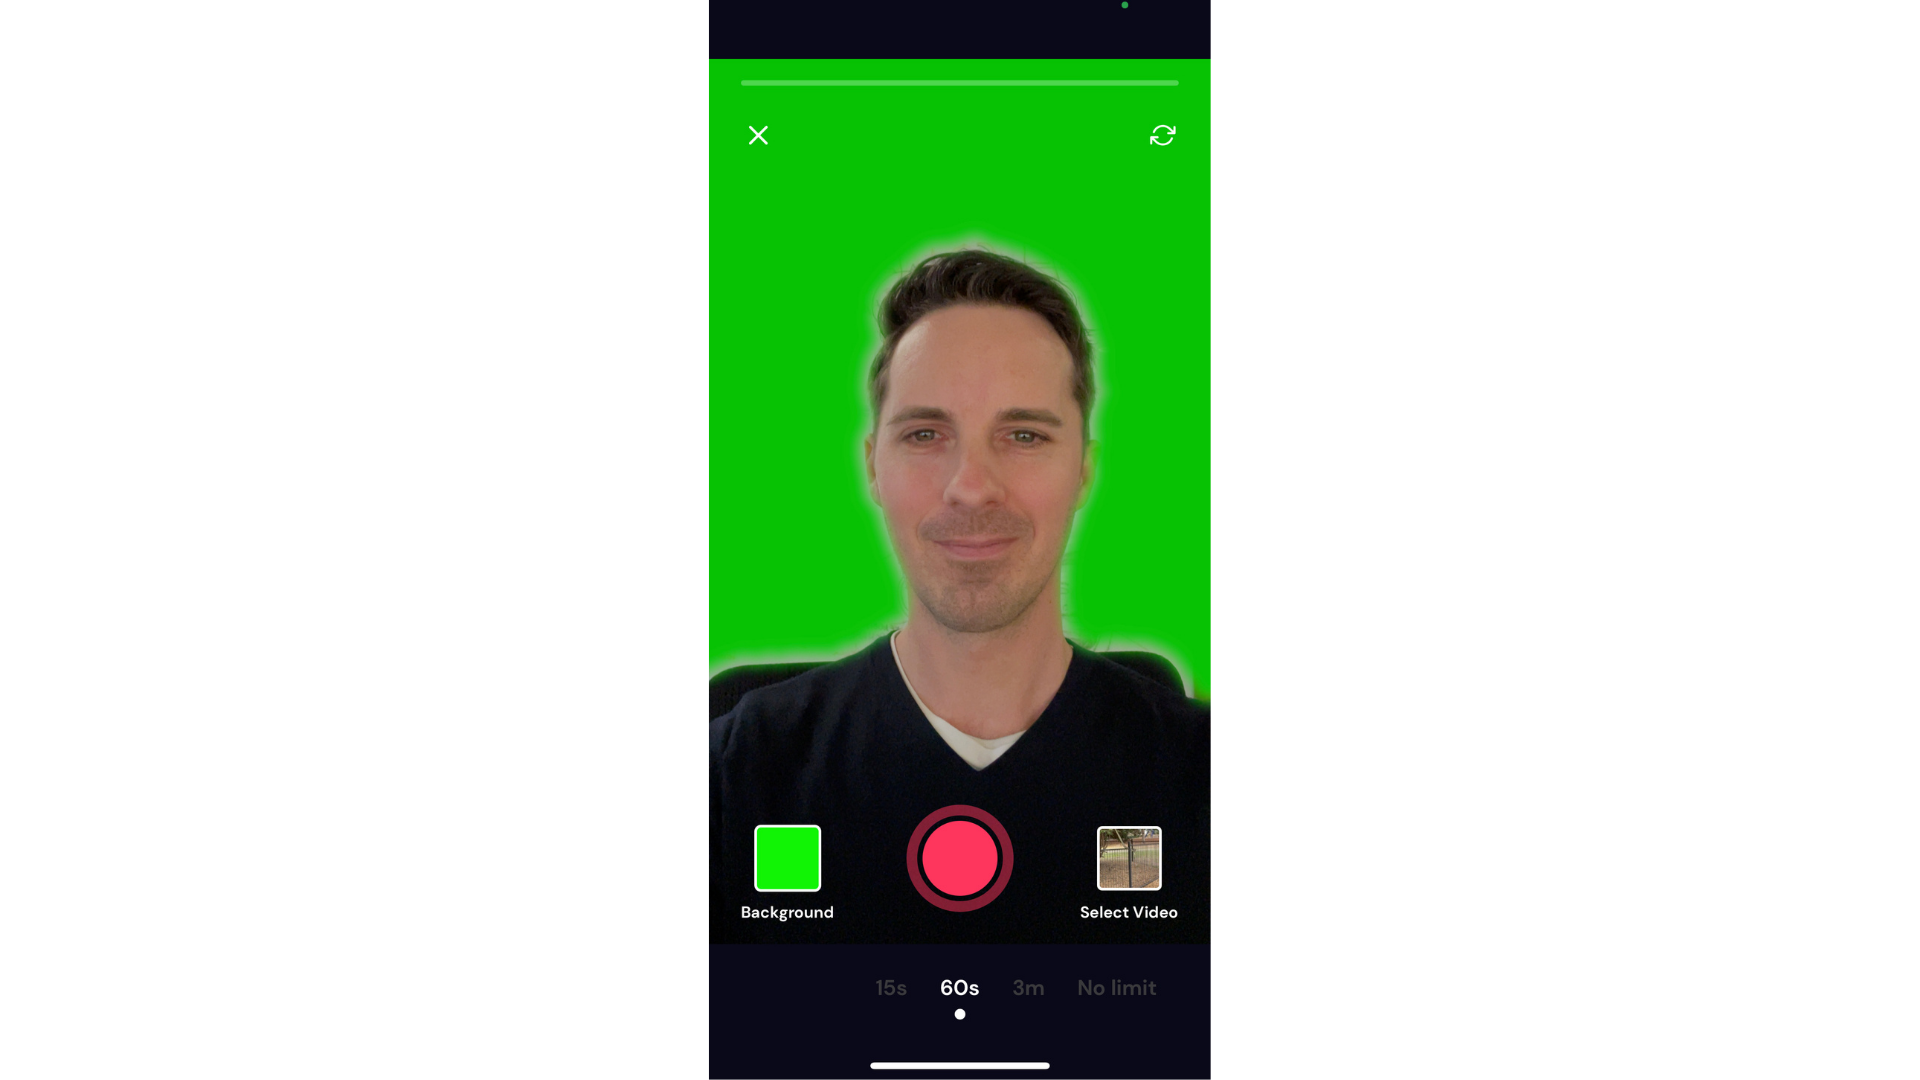 مستخدم يستخدم تأثير الشاشة الخضراء على تطبيق Cliphcamp iOS